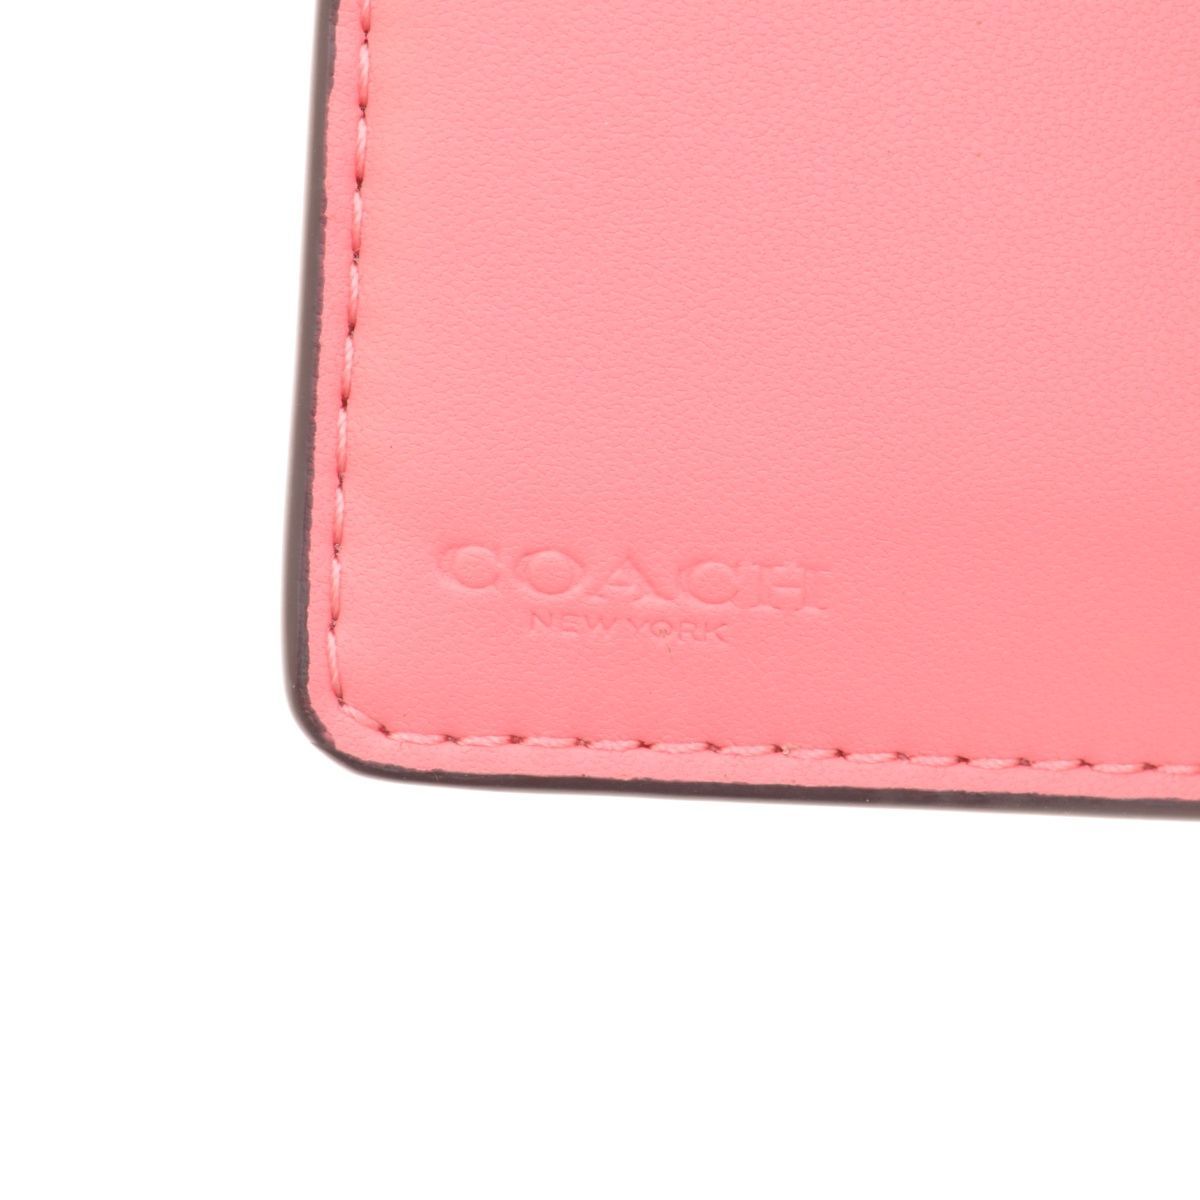 【COACH】アウトレット品 C9934 ミディアム コーナー ジップ ウォレット ヴィンテージローズ 二つ折り財布